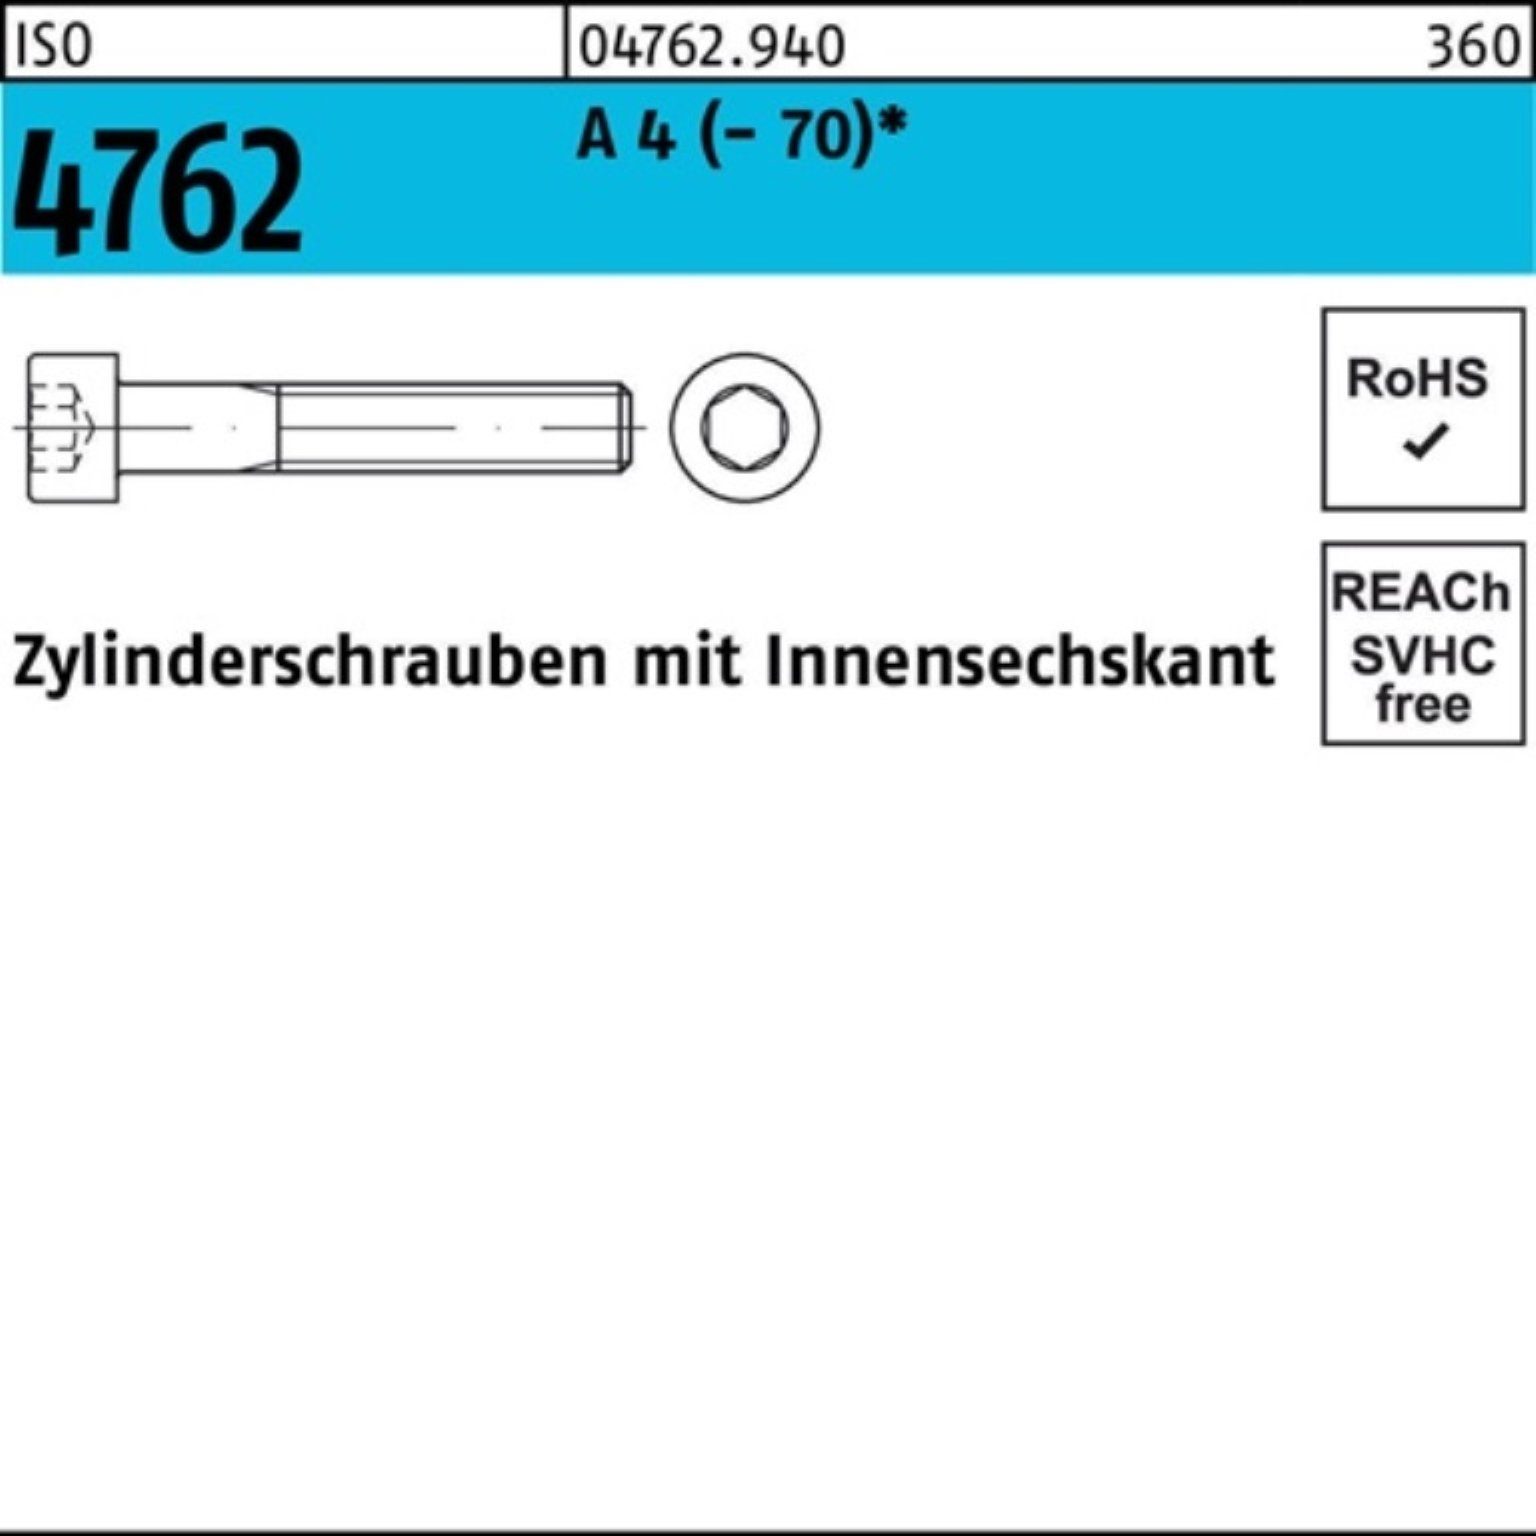 ISO Zylinderschraube Pack Reyher 4 Innen-6kt 22 M6x (70) Zylinderschraube 4762 A 100er 100 S